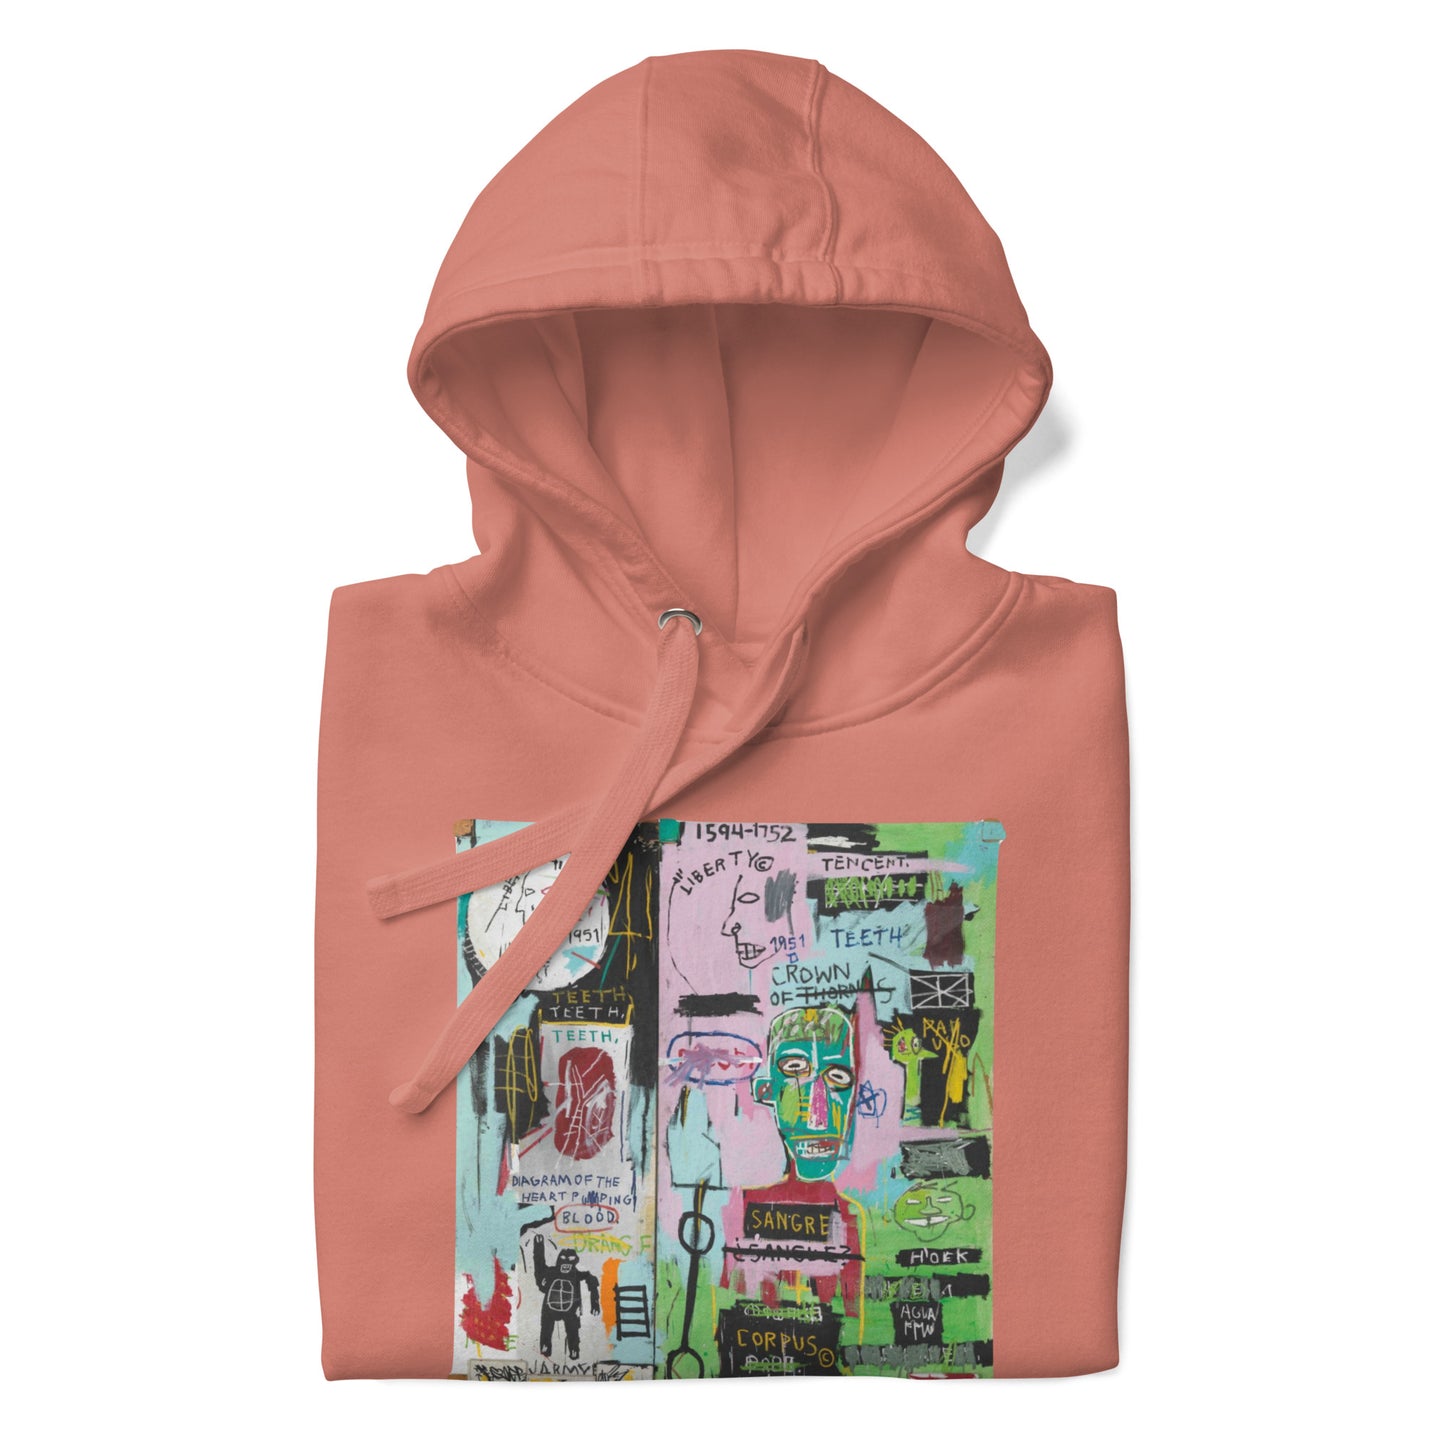 Jean-Michel Basquiat "In Italian" Artwork Printed Premium Streetwear Sweatshirt Hoodie Salmon Pink